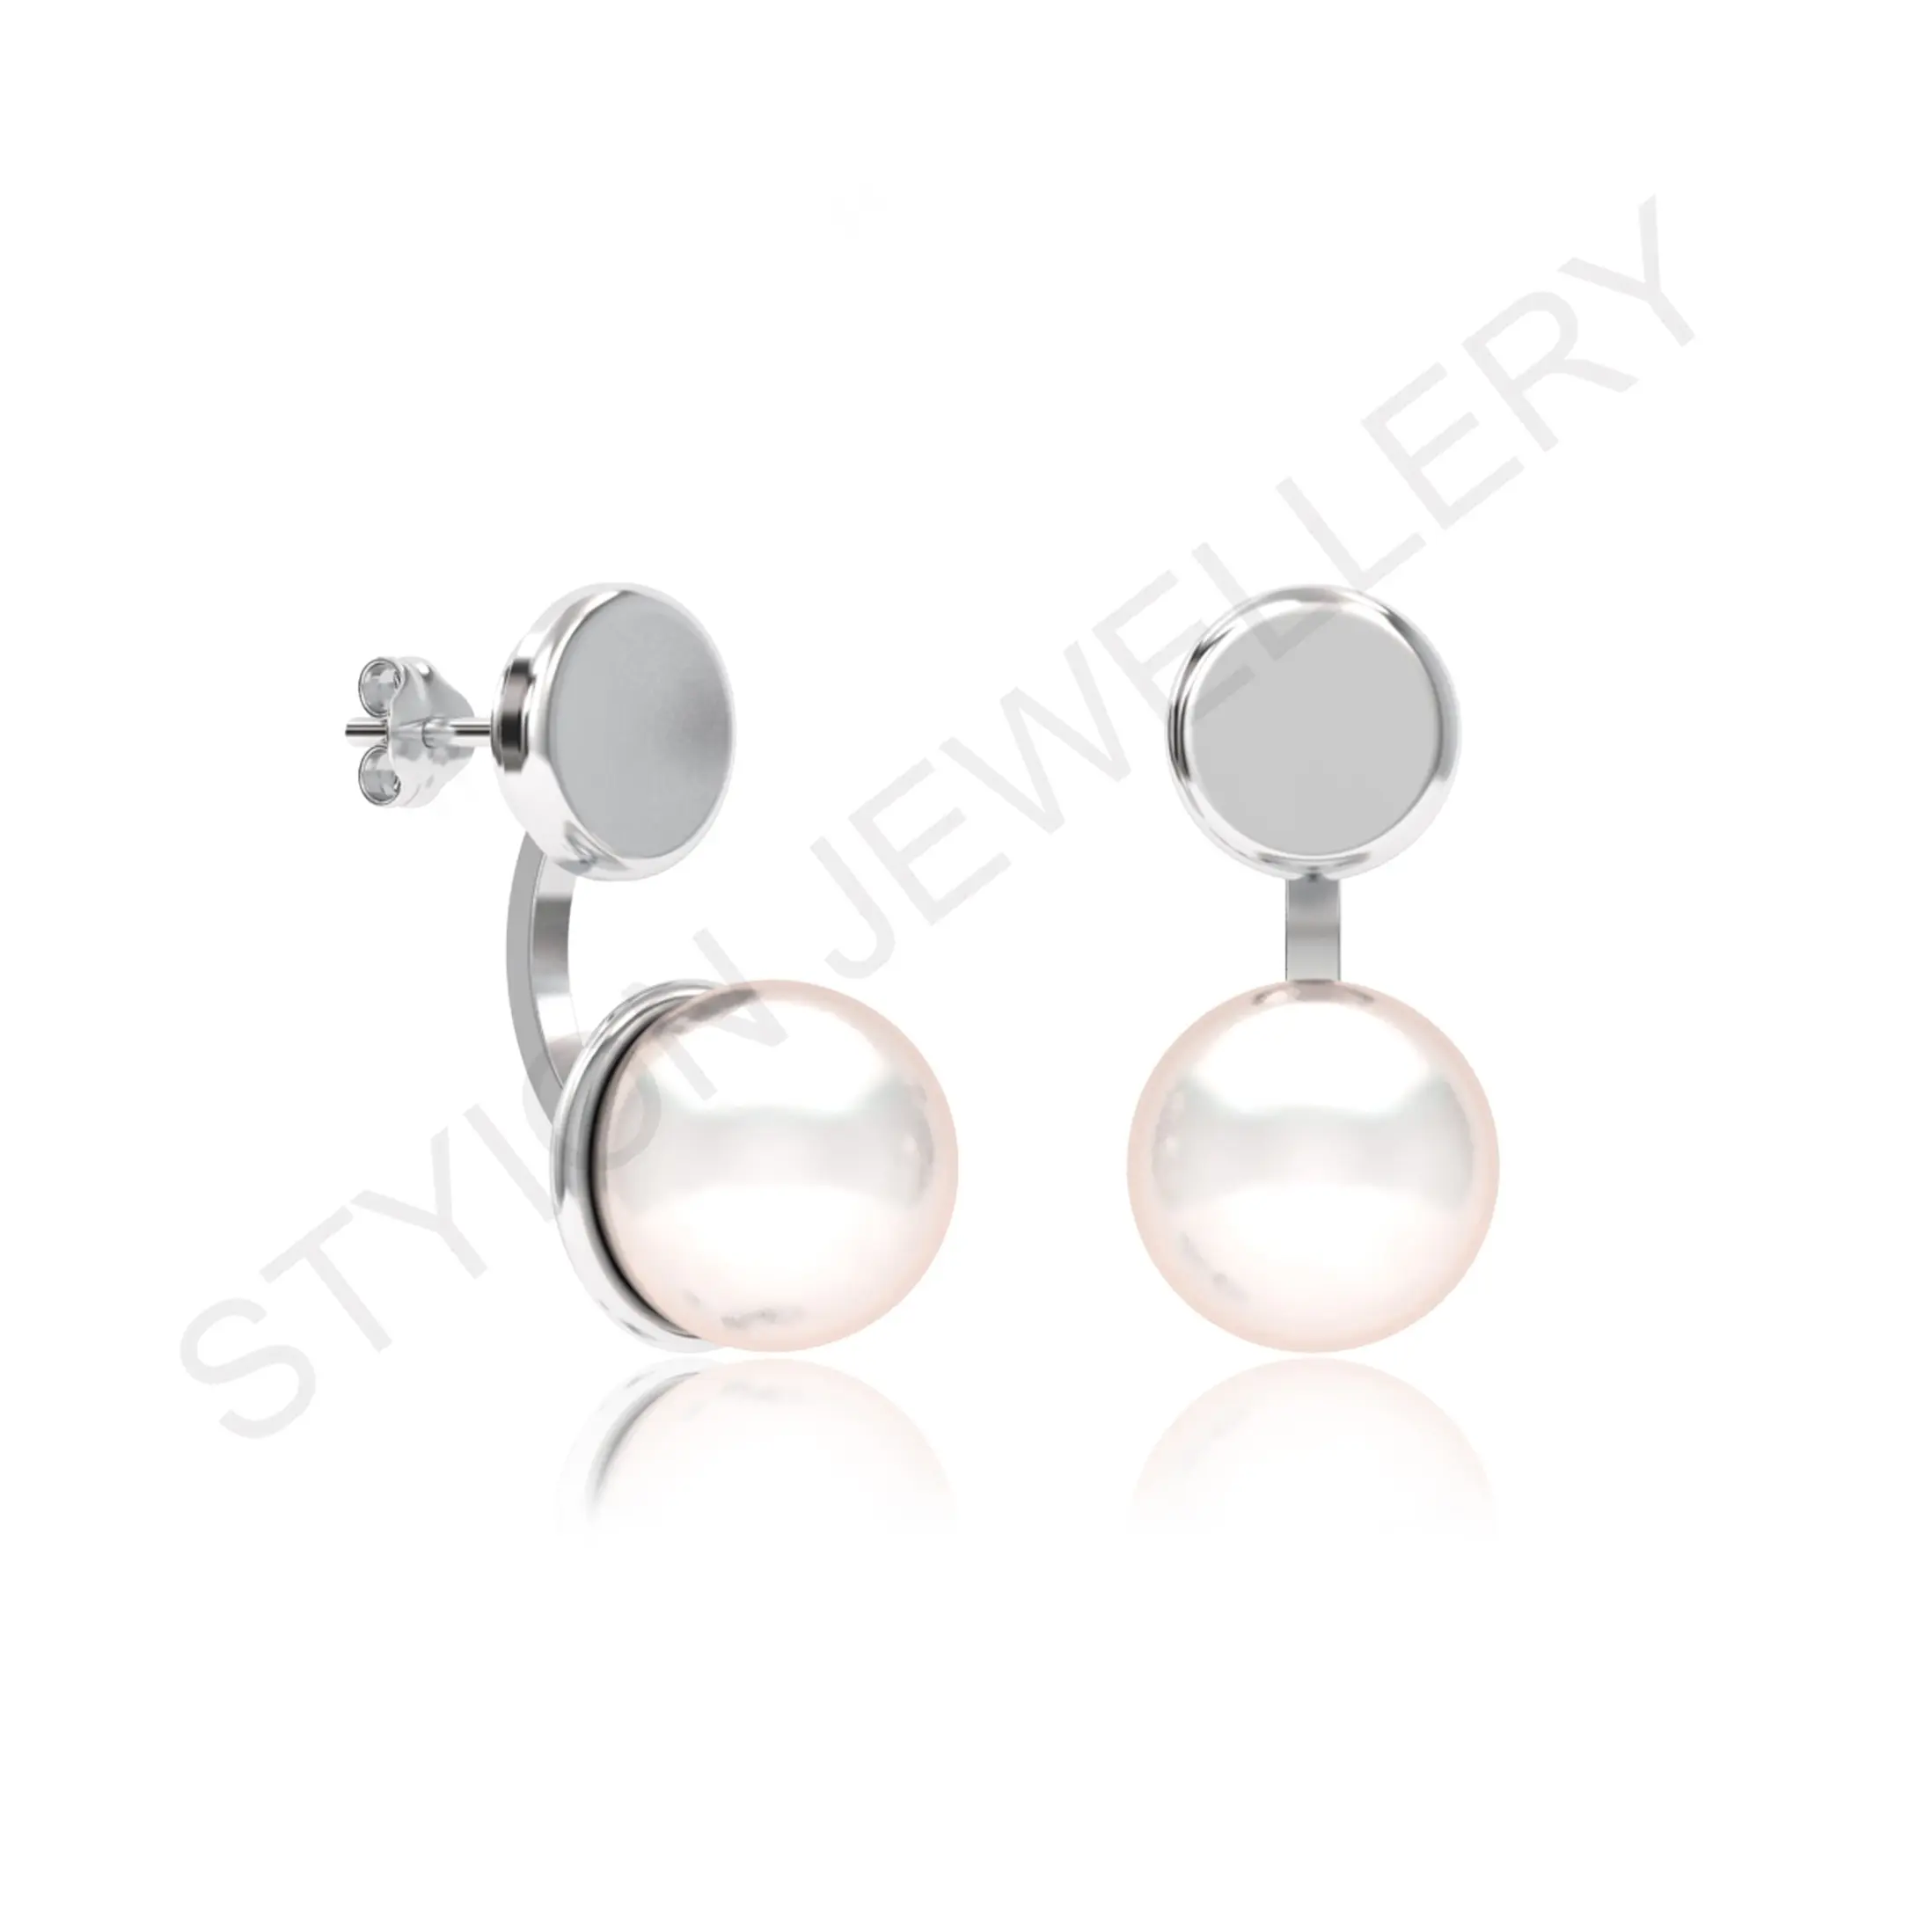 Moda aksesuarları güzel mücevher beyaz inci 2IN düğme küpe Styion mücevherat tarafından toptan tedarik mevcuttur